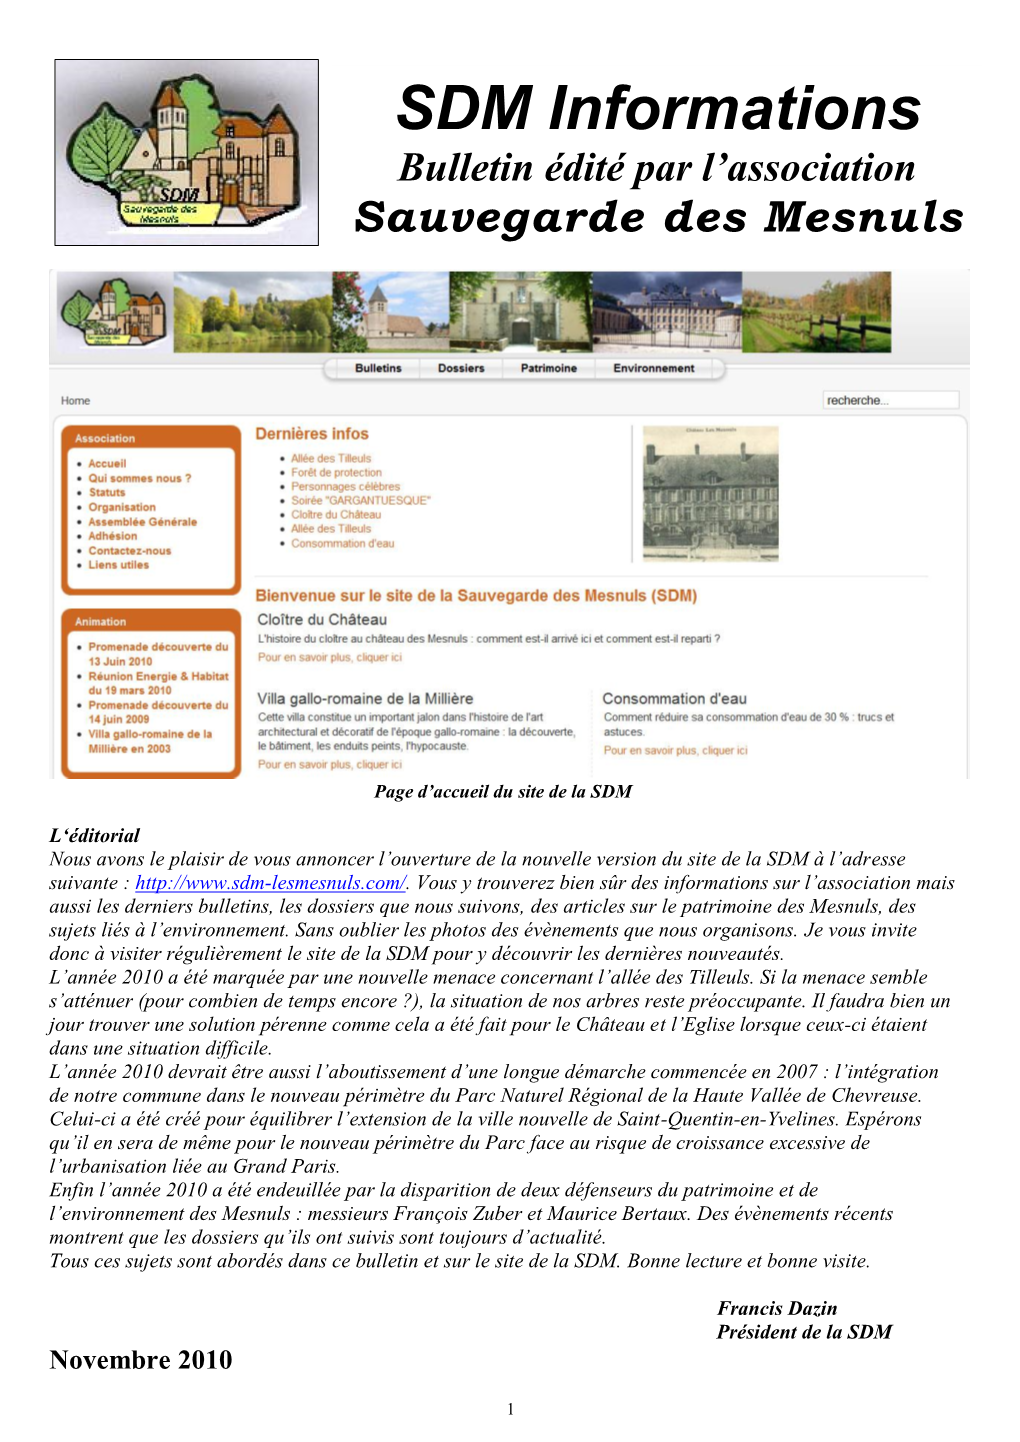 SDM Informations Bulletin Édité Par L’Association Sauvegarde Des Mesnuls